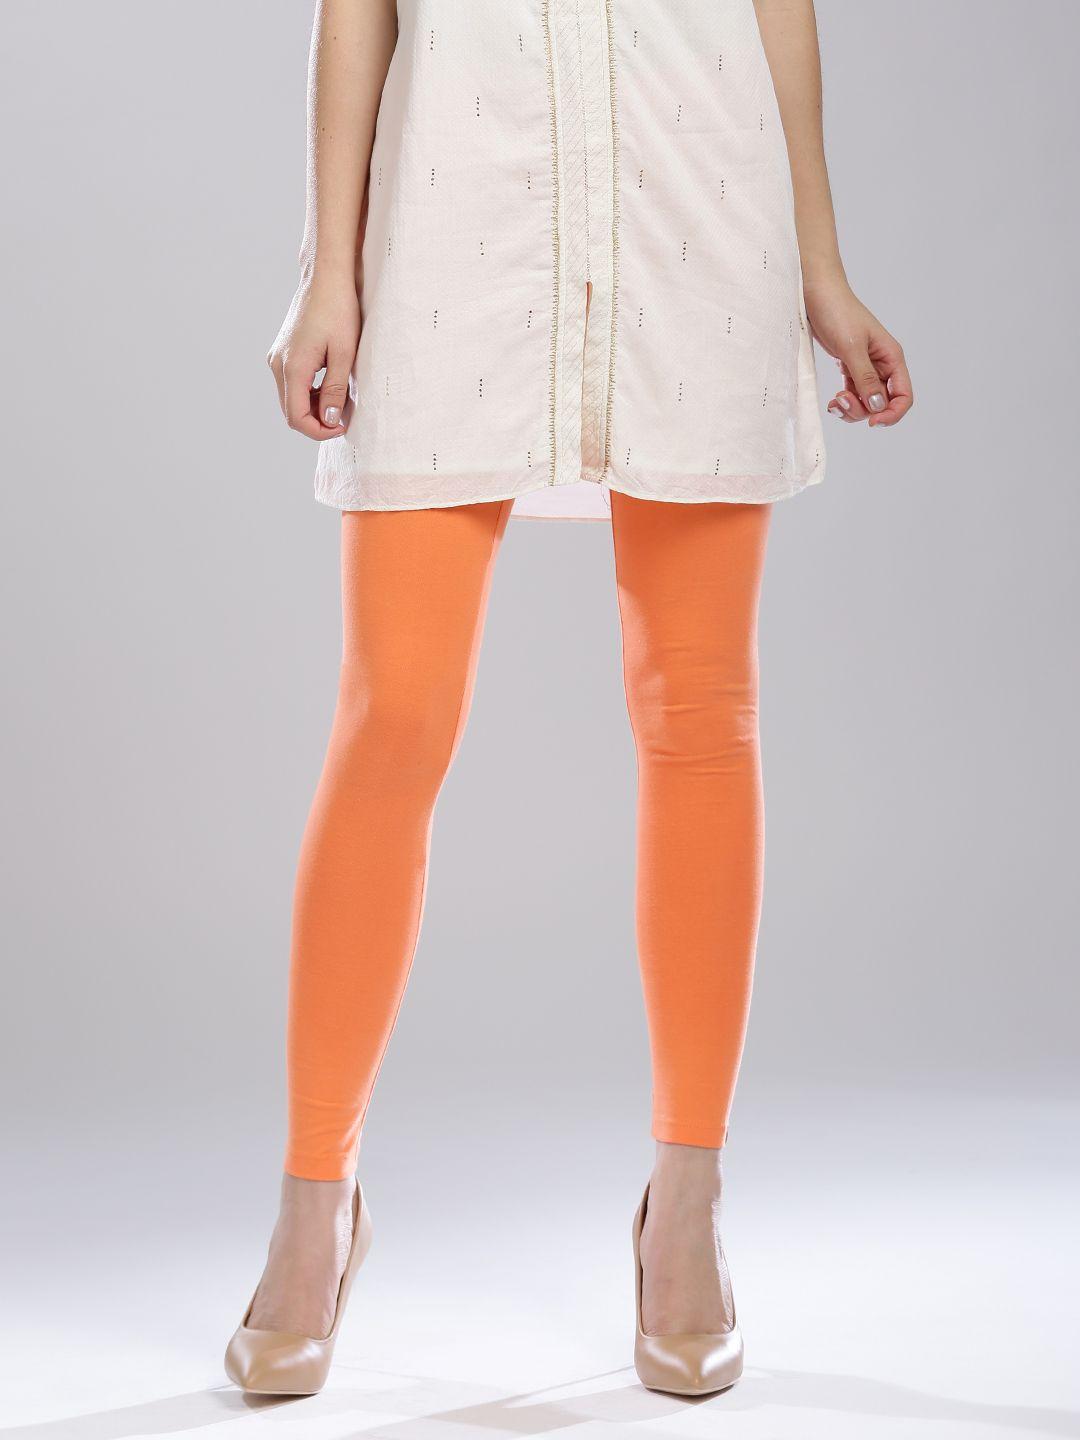 w coral orange leggings